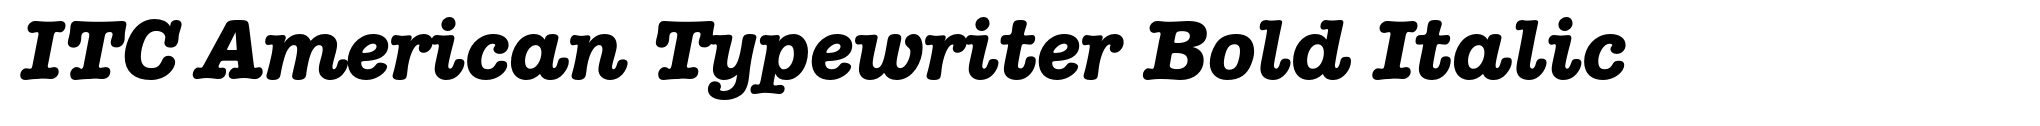 ITC American Typewriter Bold Italic image